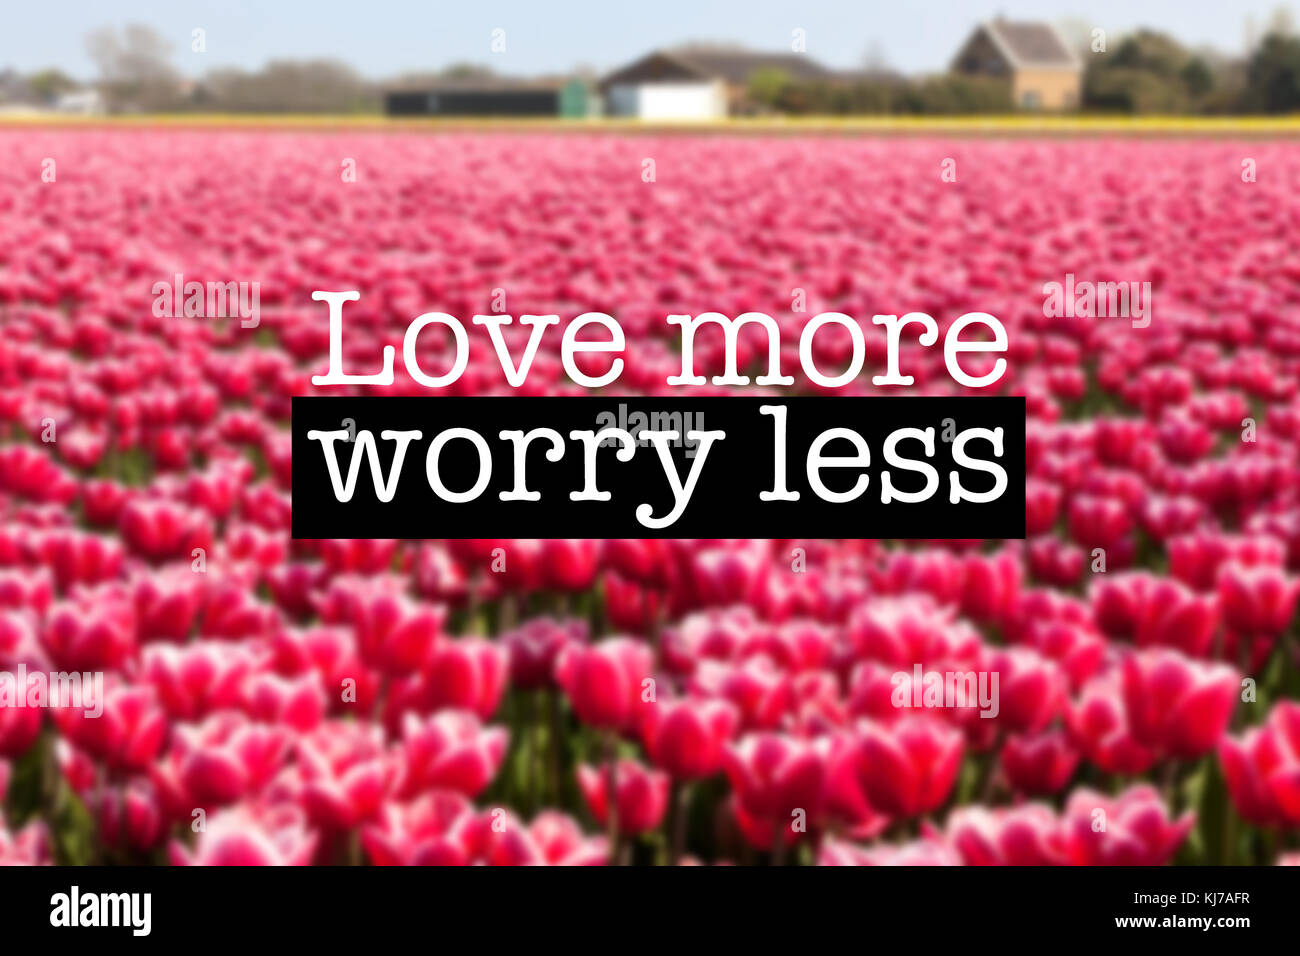 Inspirational motivation Zitat mit dem Satz "Liebe mehr weniger Sorgen", blühende Tulpen Blumen Hintergrund Stockfoto